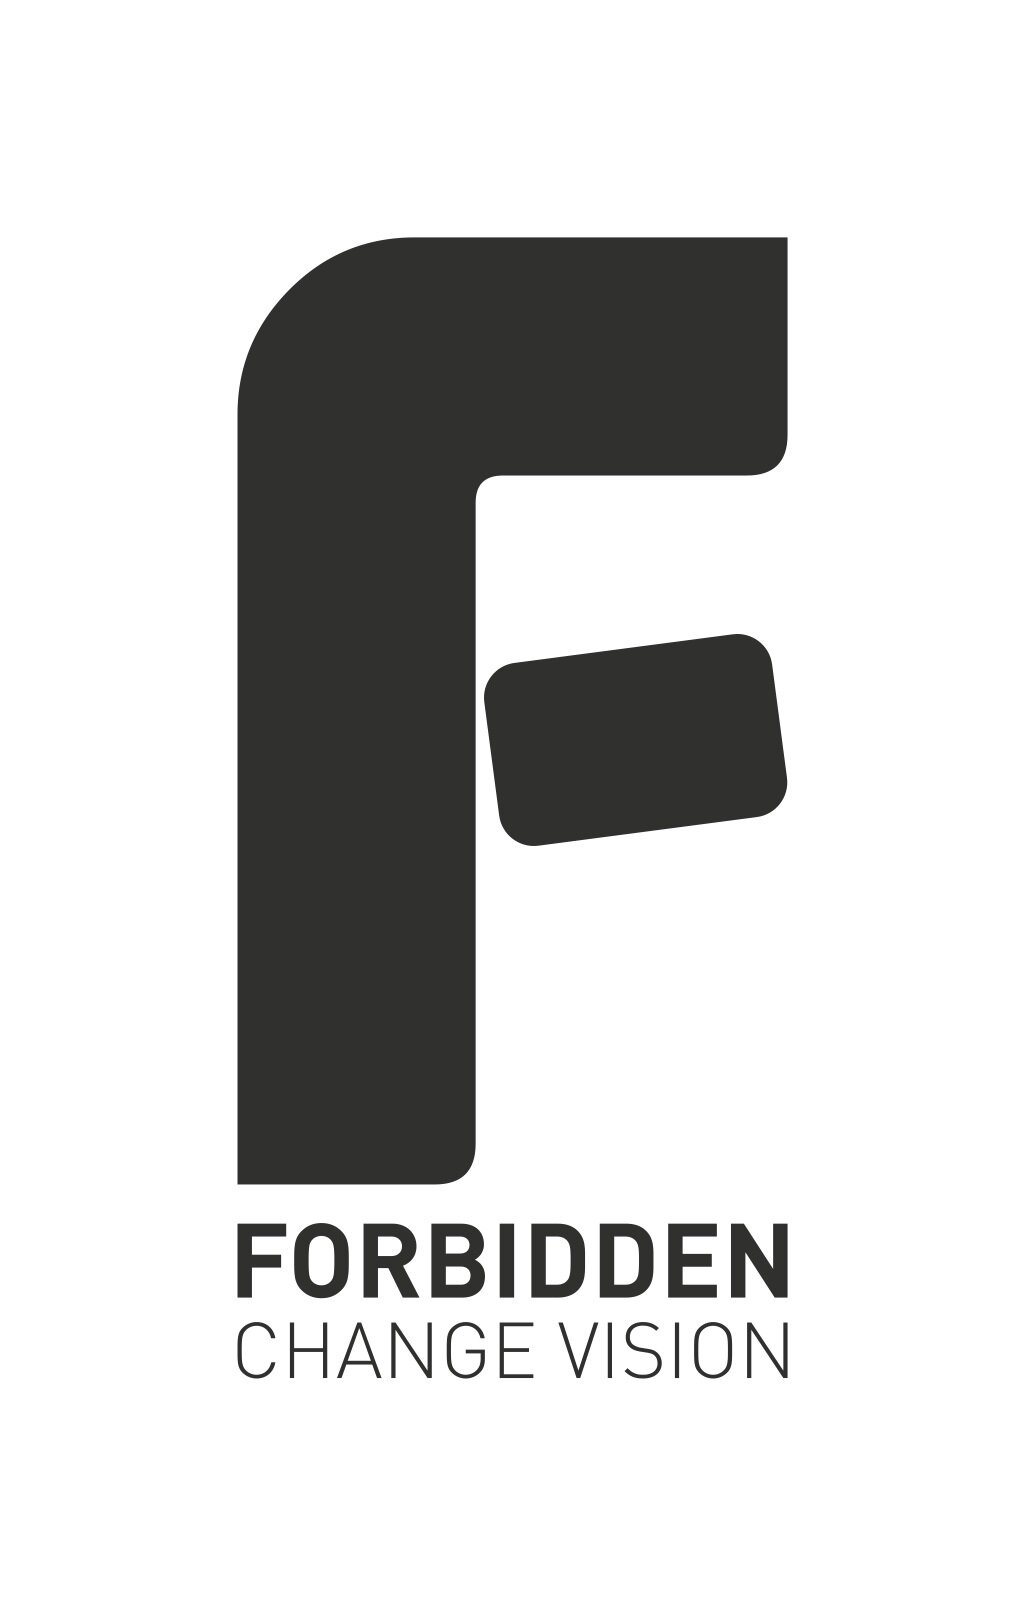 Forbidden-NewLogo.jpg